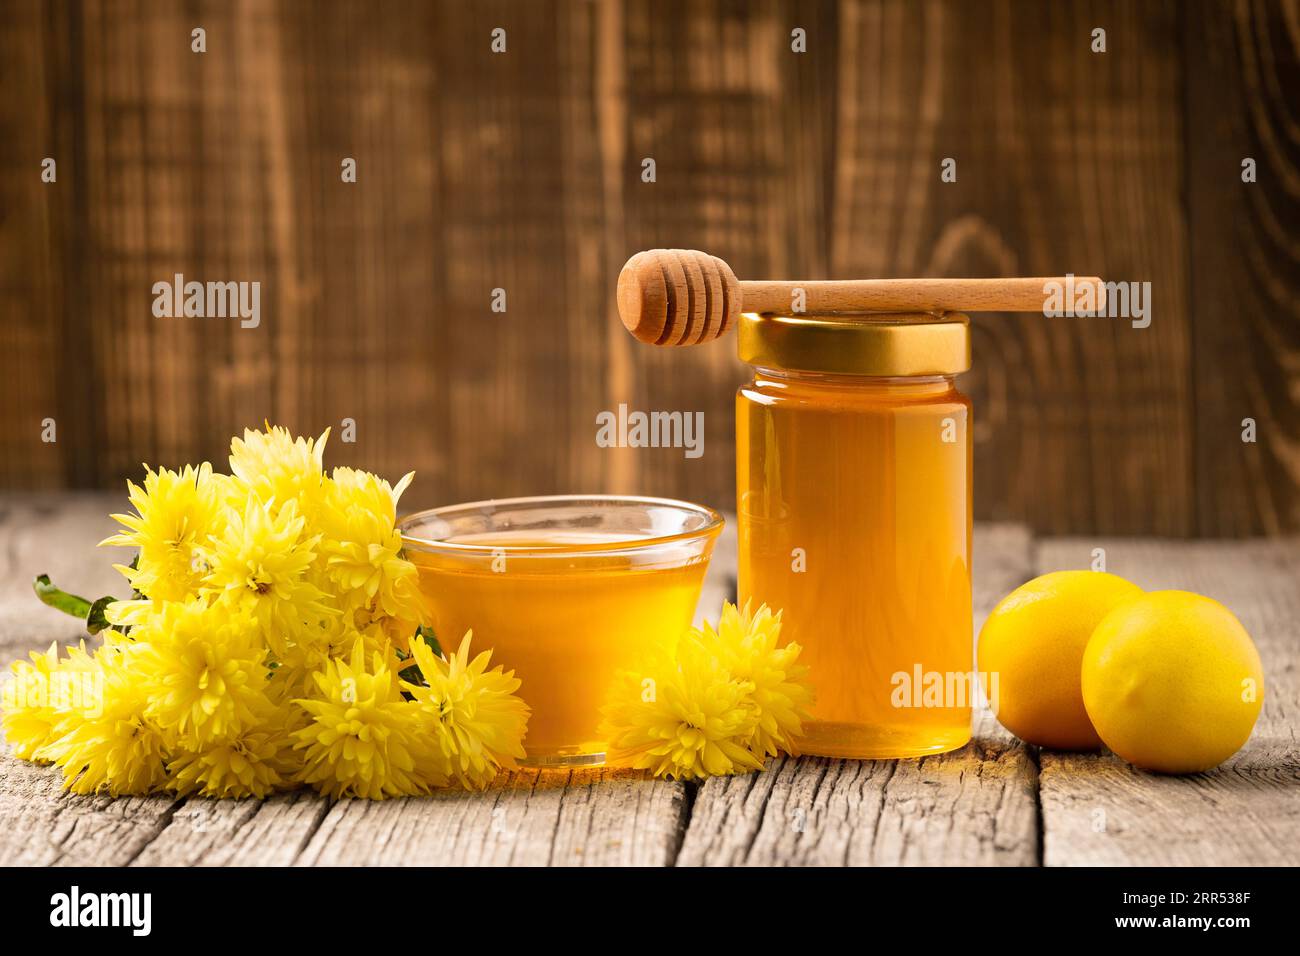 Blume Honig in einem Glas und Schüssel, Holzdipper, frische Zitronen auf einem hölzernen Hintergrund. Produkte, die das Immunsystem stärken. Stockfoto